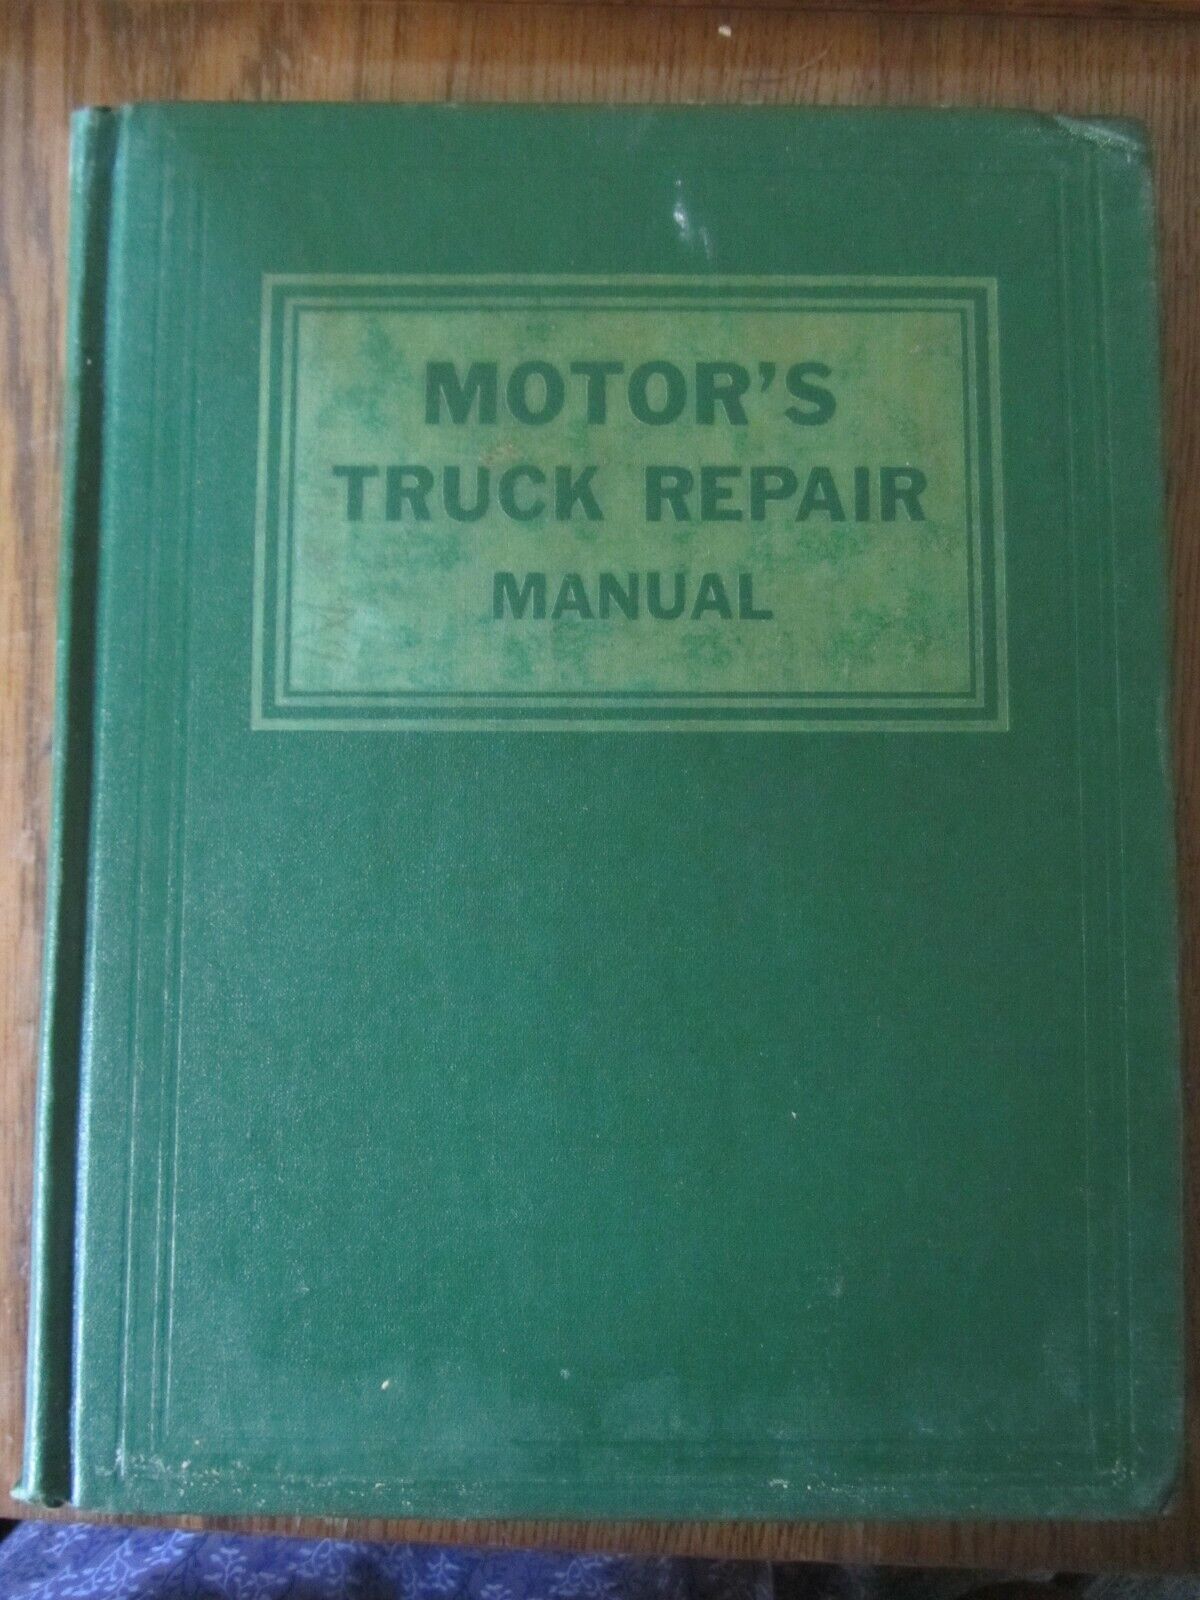 Motor's Truck Repair Manual; 13th edition